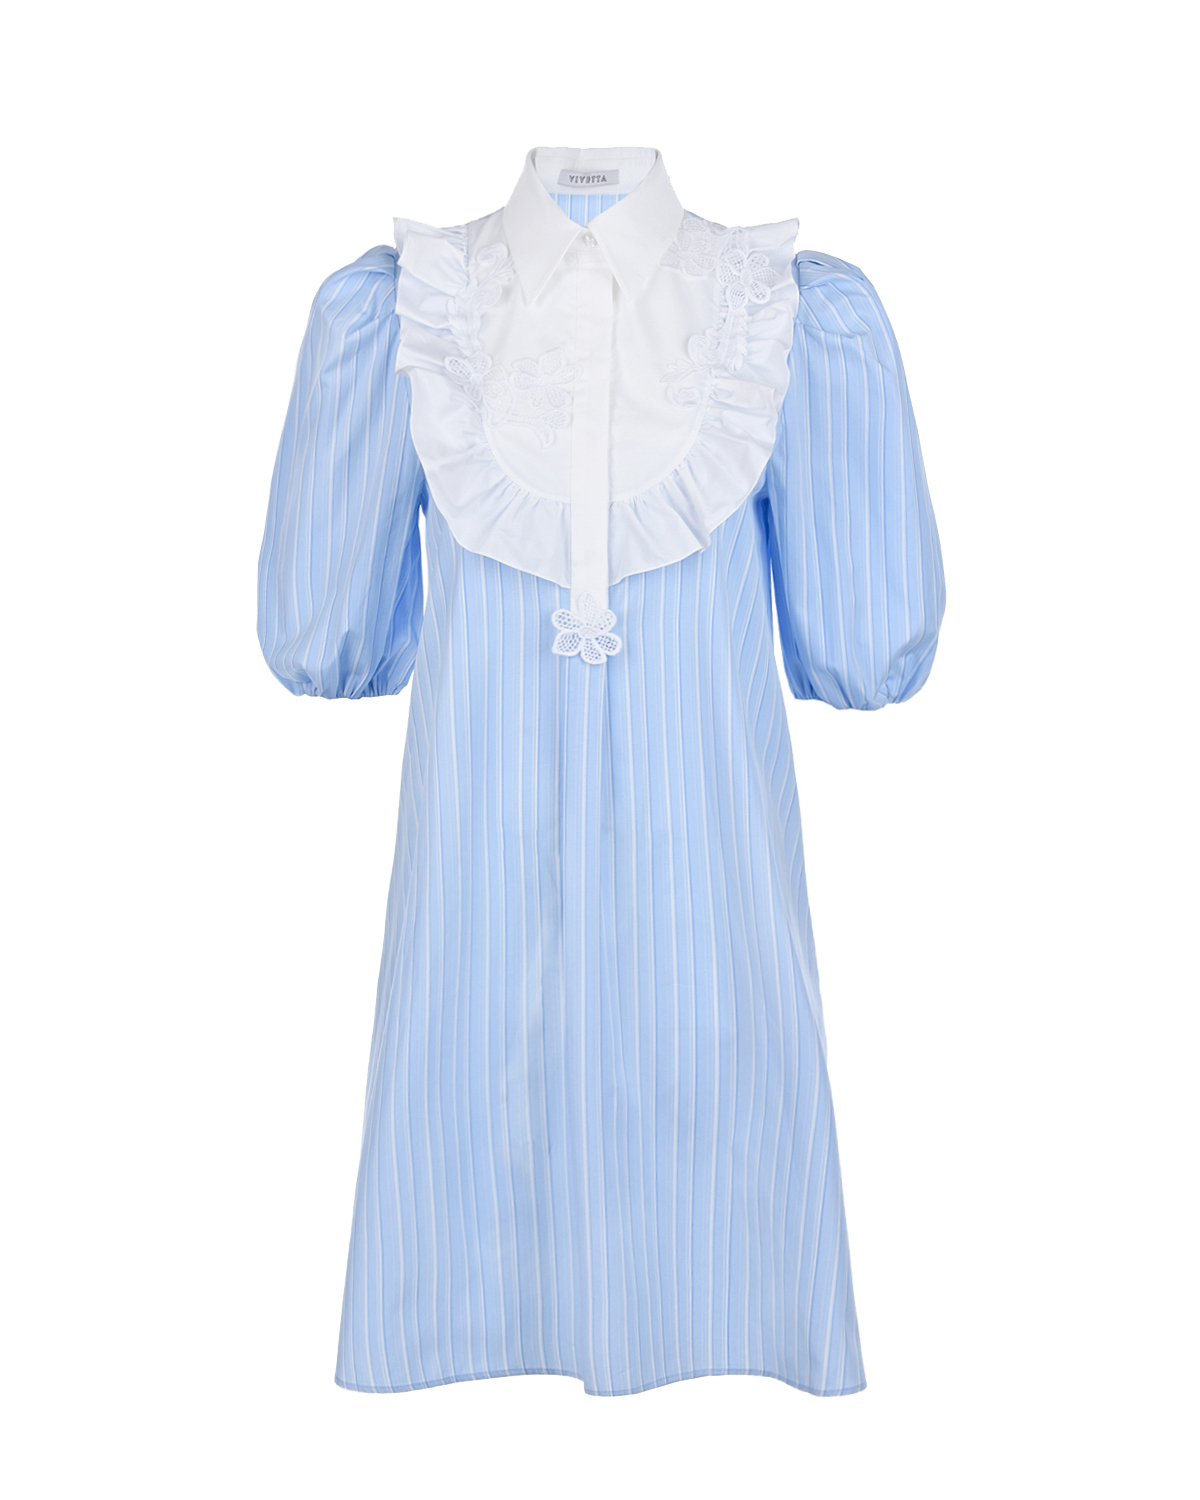 Голубое платье с белым воротником Vivetta, размер 40, цвет голубой - фото 1